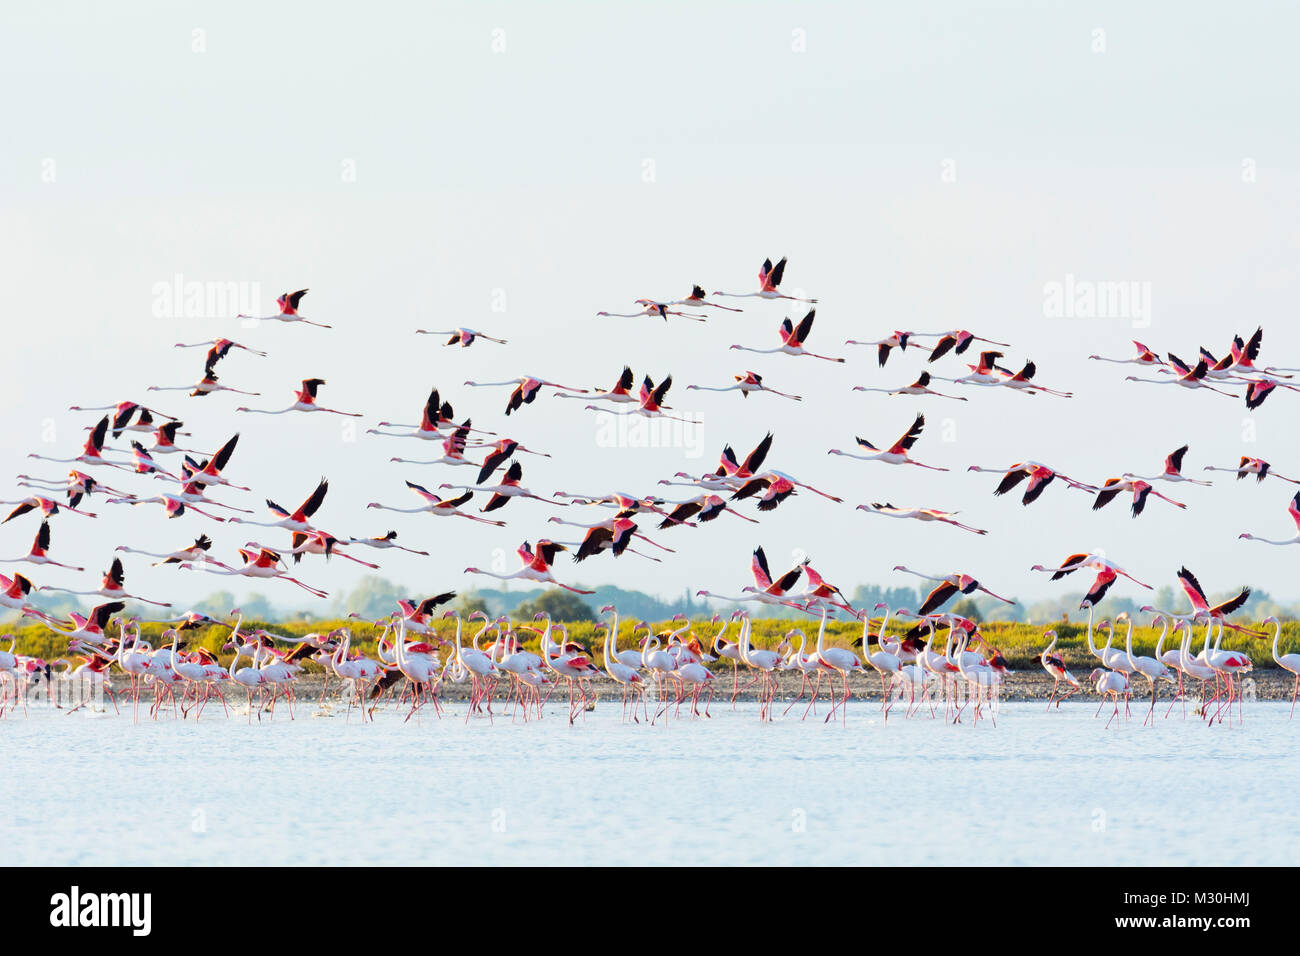 Europäische Flamingo, Flamingo, Phoenicopterus roseus, im Flug, Saintes-Maries-de-la-Mer, Parc naturel régional de Camargue, Languedoc Roussillon, Frankreich Stockfoto